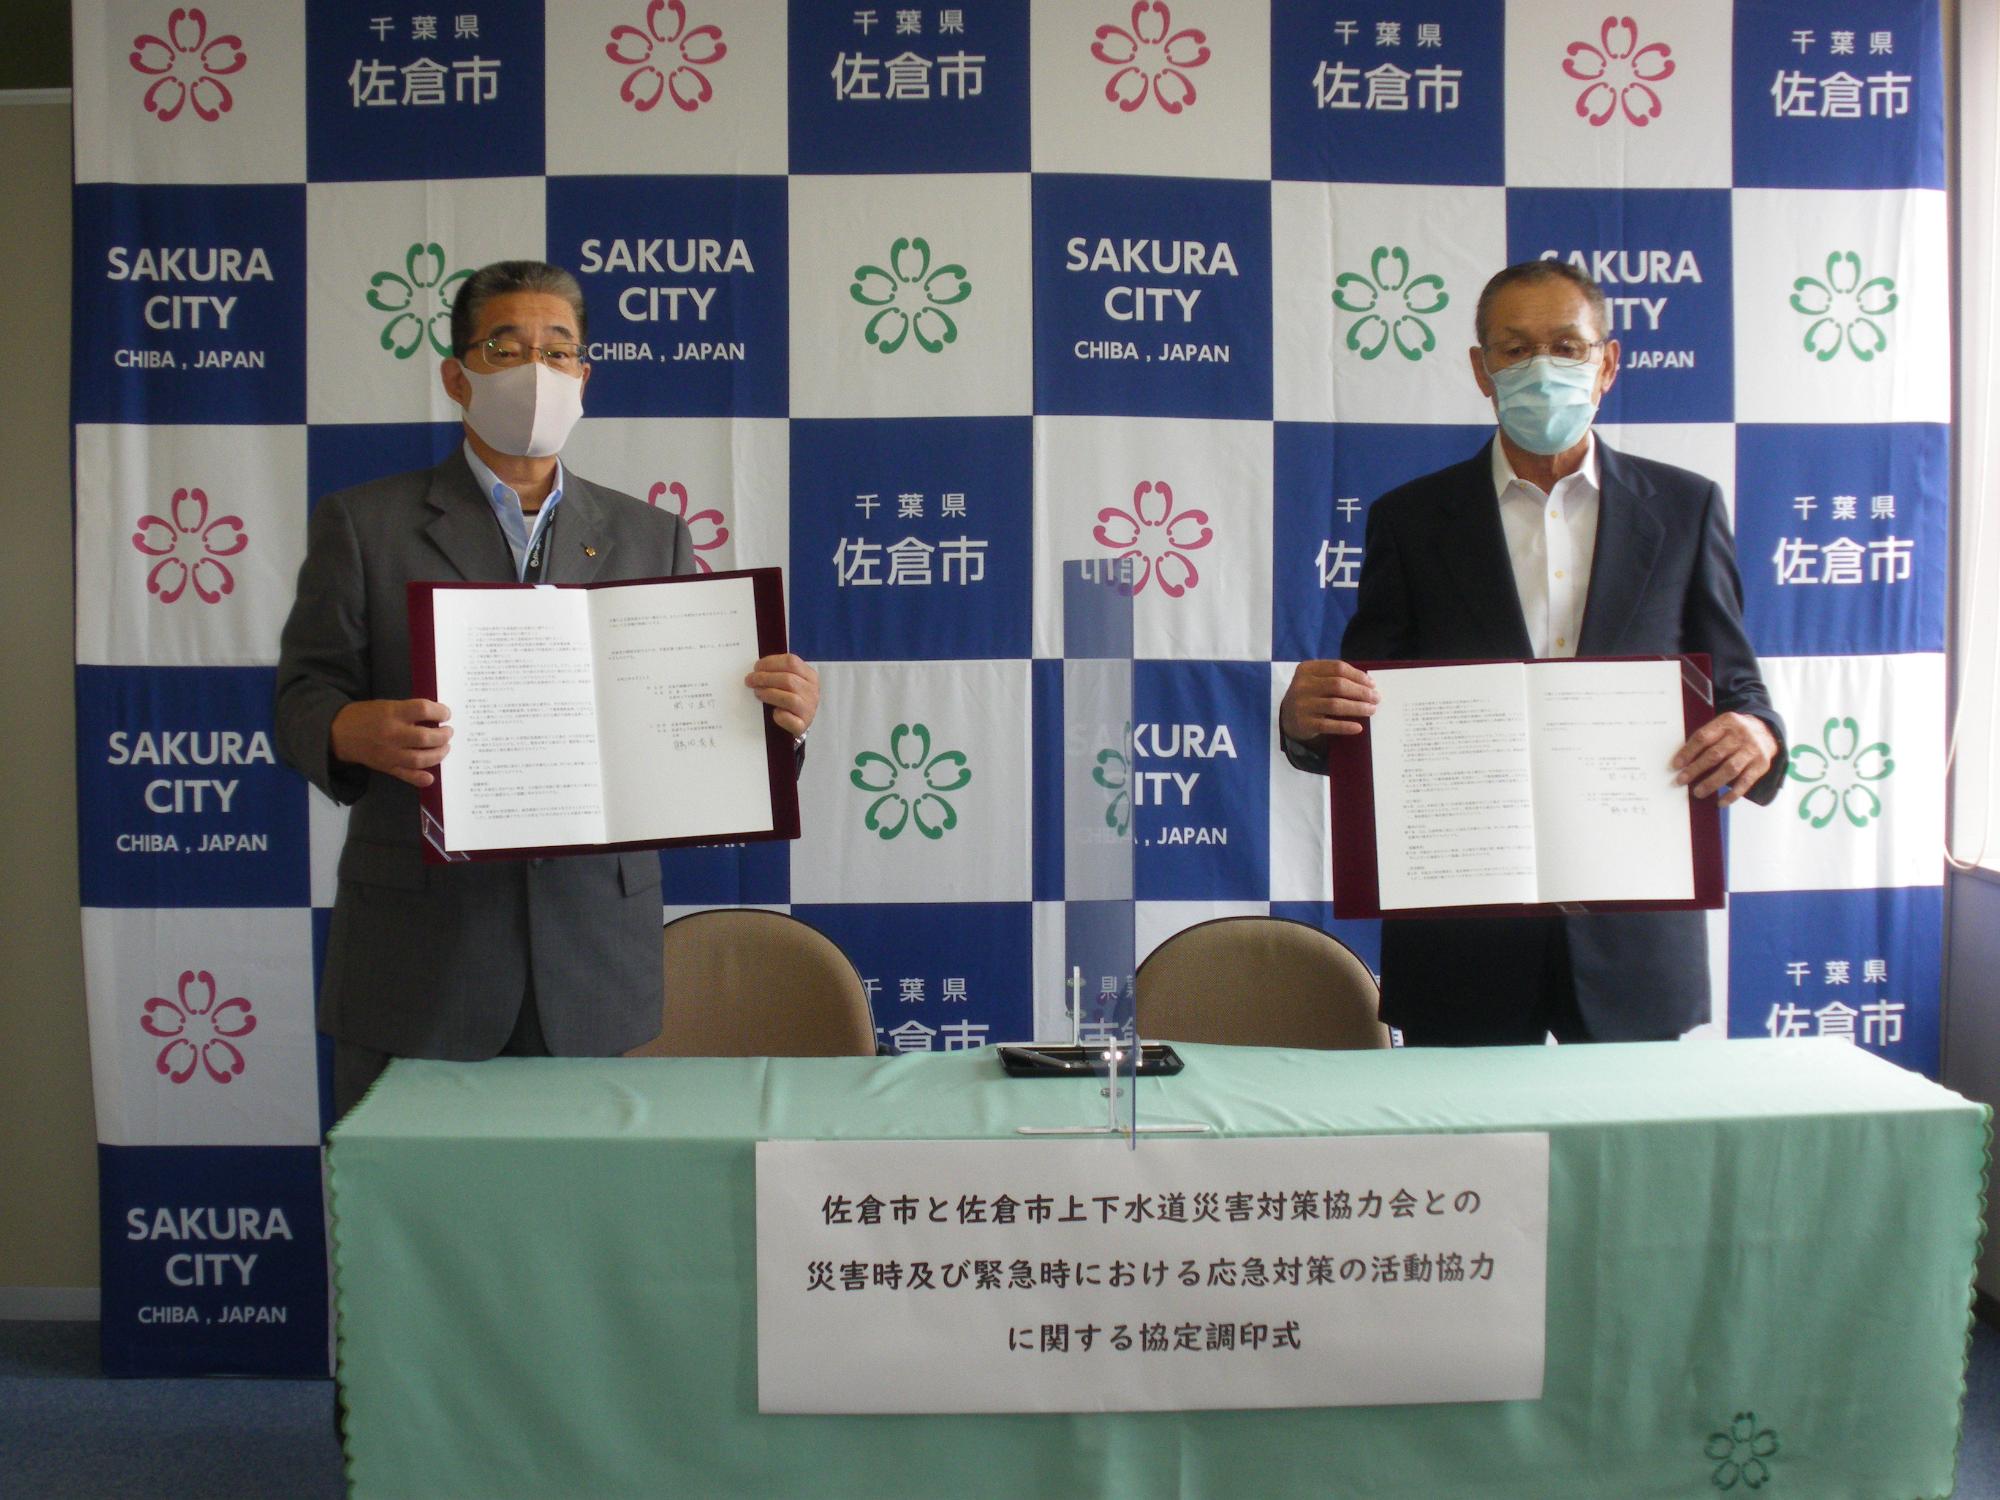 関口直行氏と鶴田秀美会長が協定書を持って並んで立っている写真